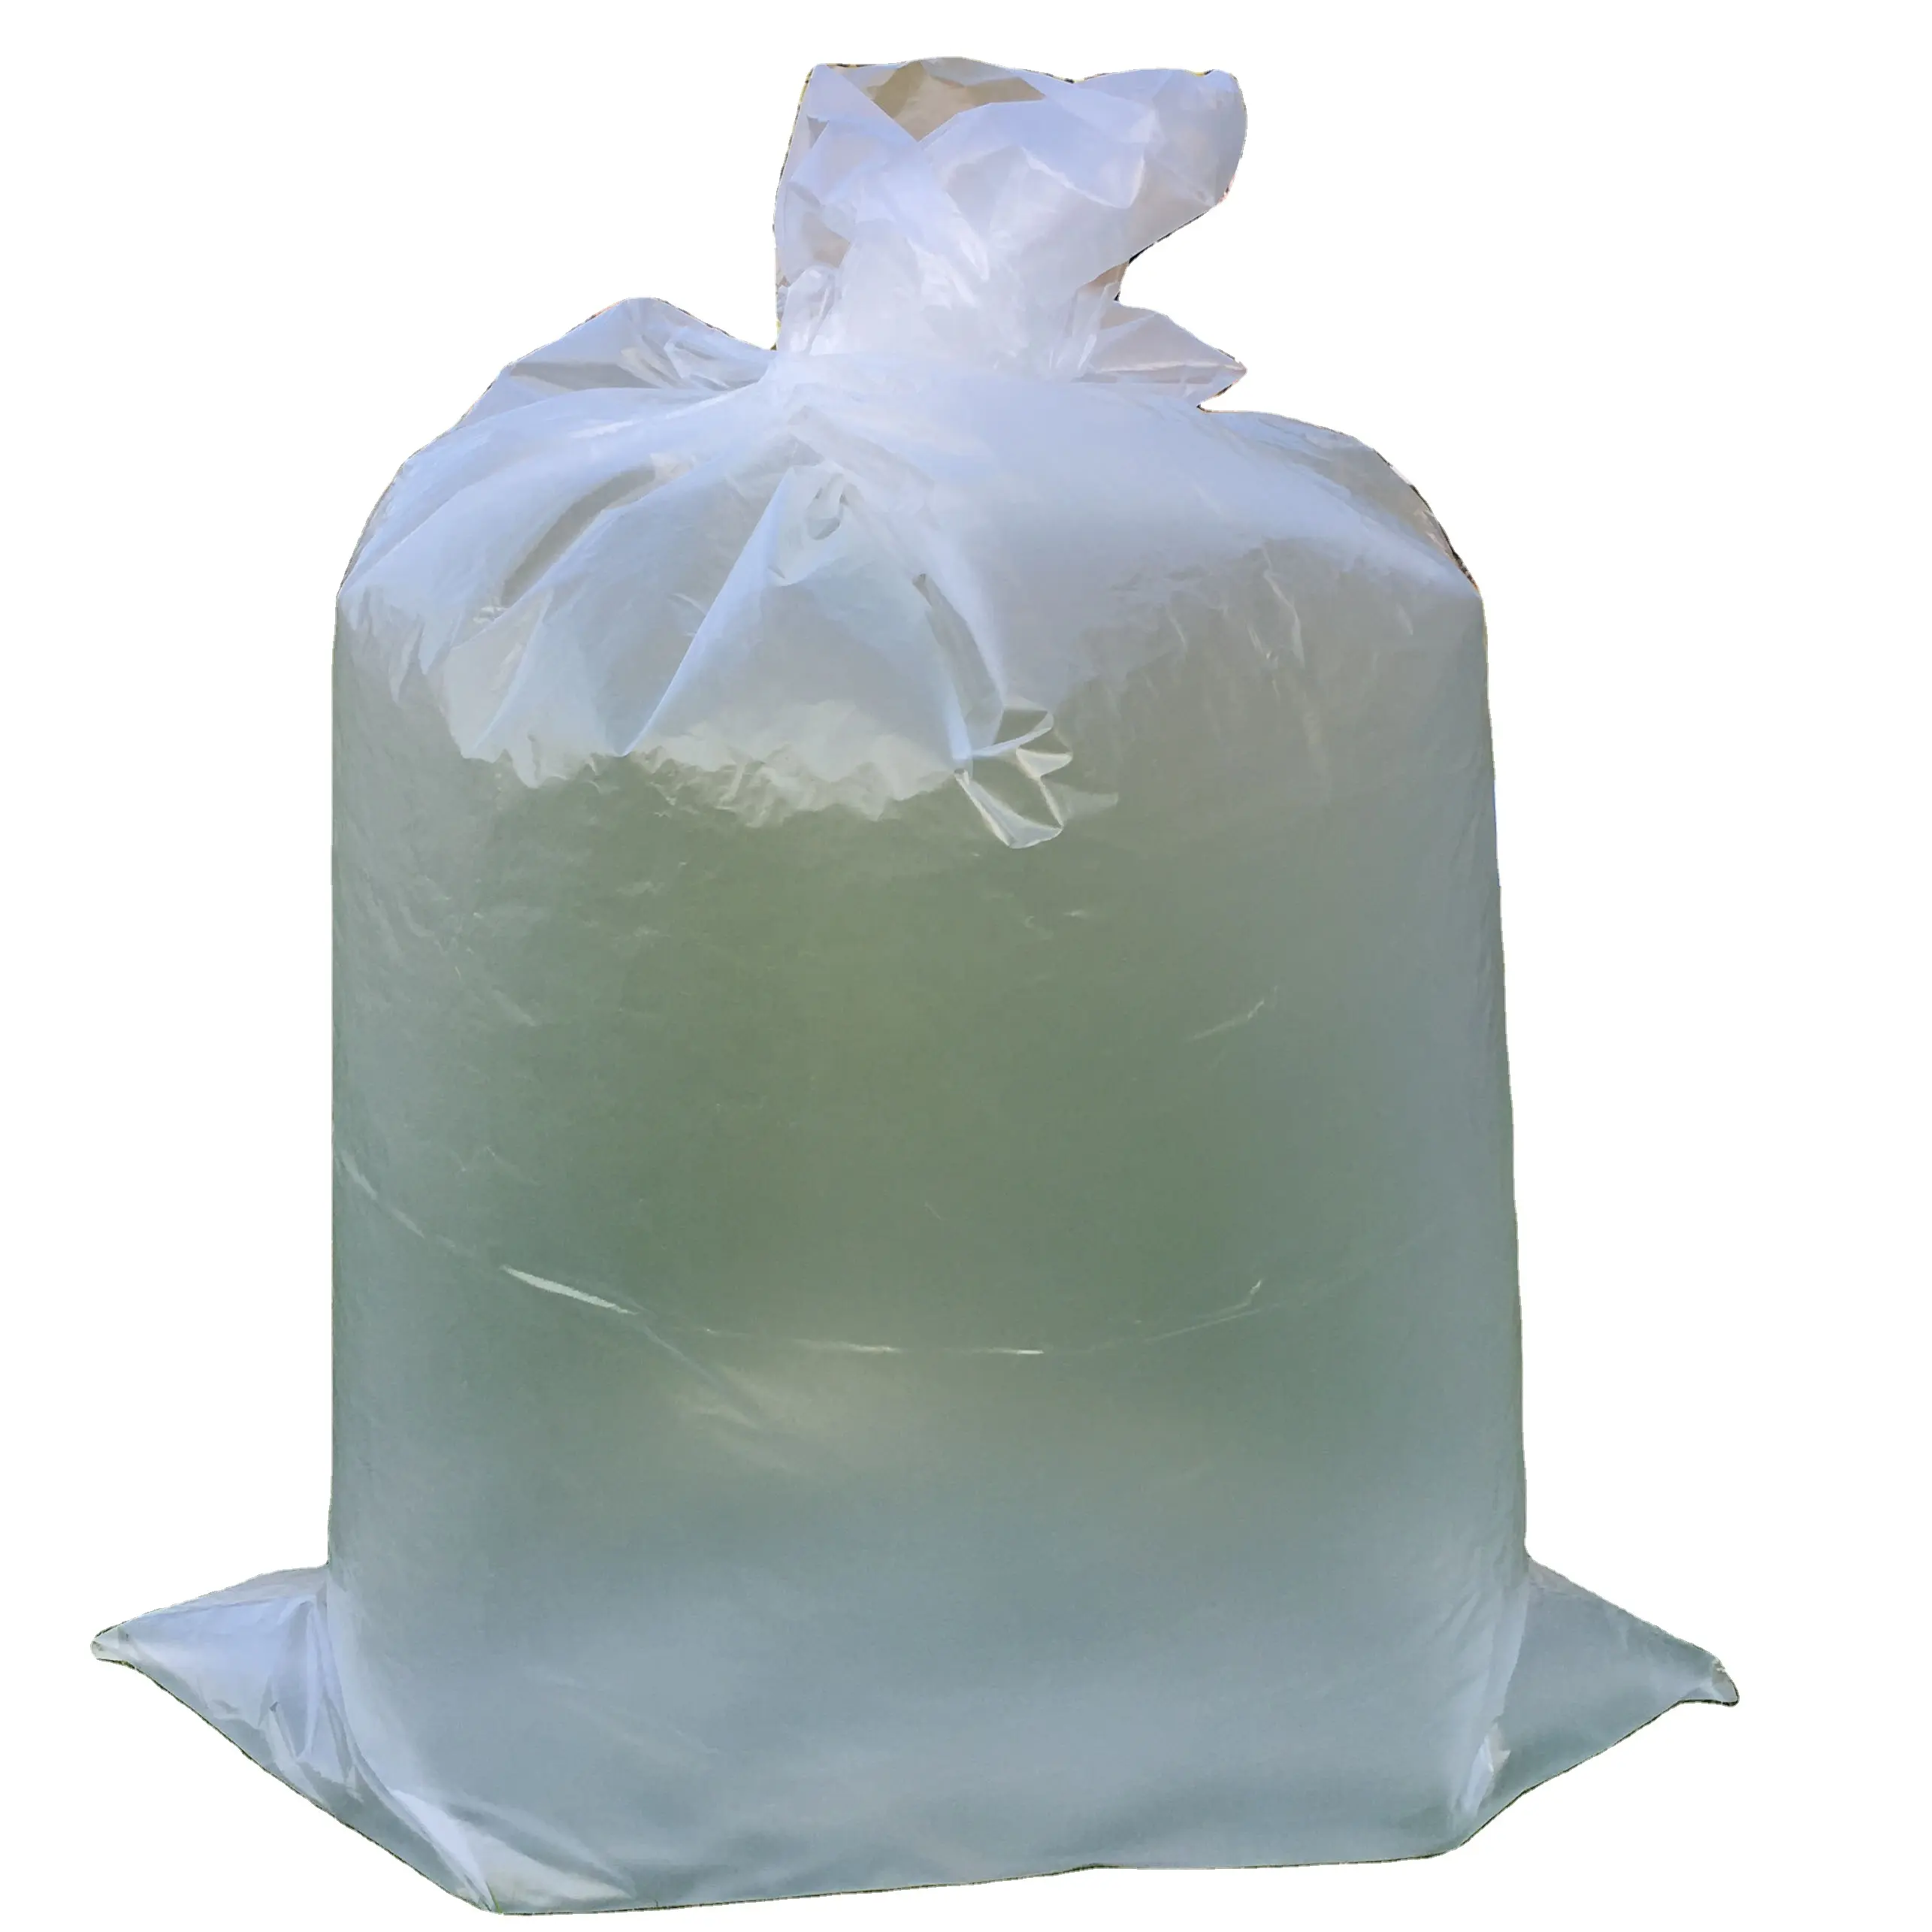 Горячая Распродажа, сделано в Китае, Полипропиленовый плетеный мешок для мешков с полиэтиленовым вкладышем, пакет для упаковки сахара на 25 кг, 50 кг